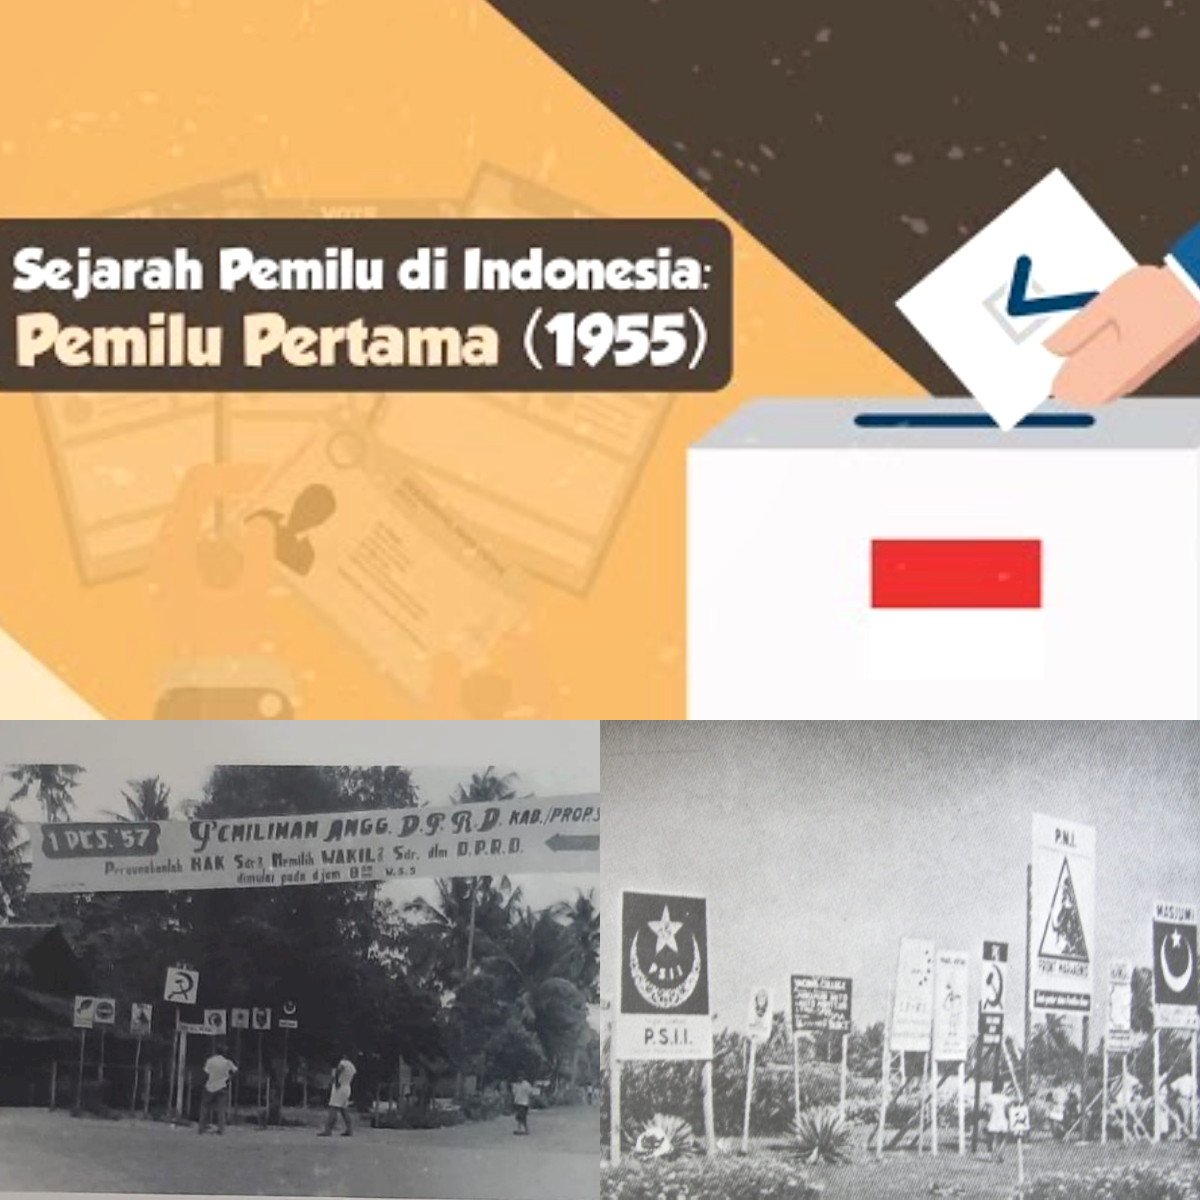 7 Pemilu Tak Terlupakan di Indonesia, Cerita di Balik Proses Pemilihan Umum Dari Suara Rakyat!